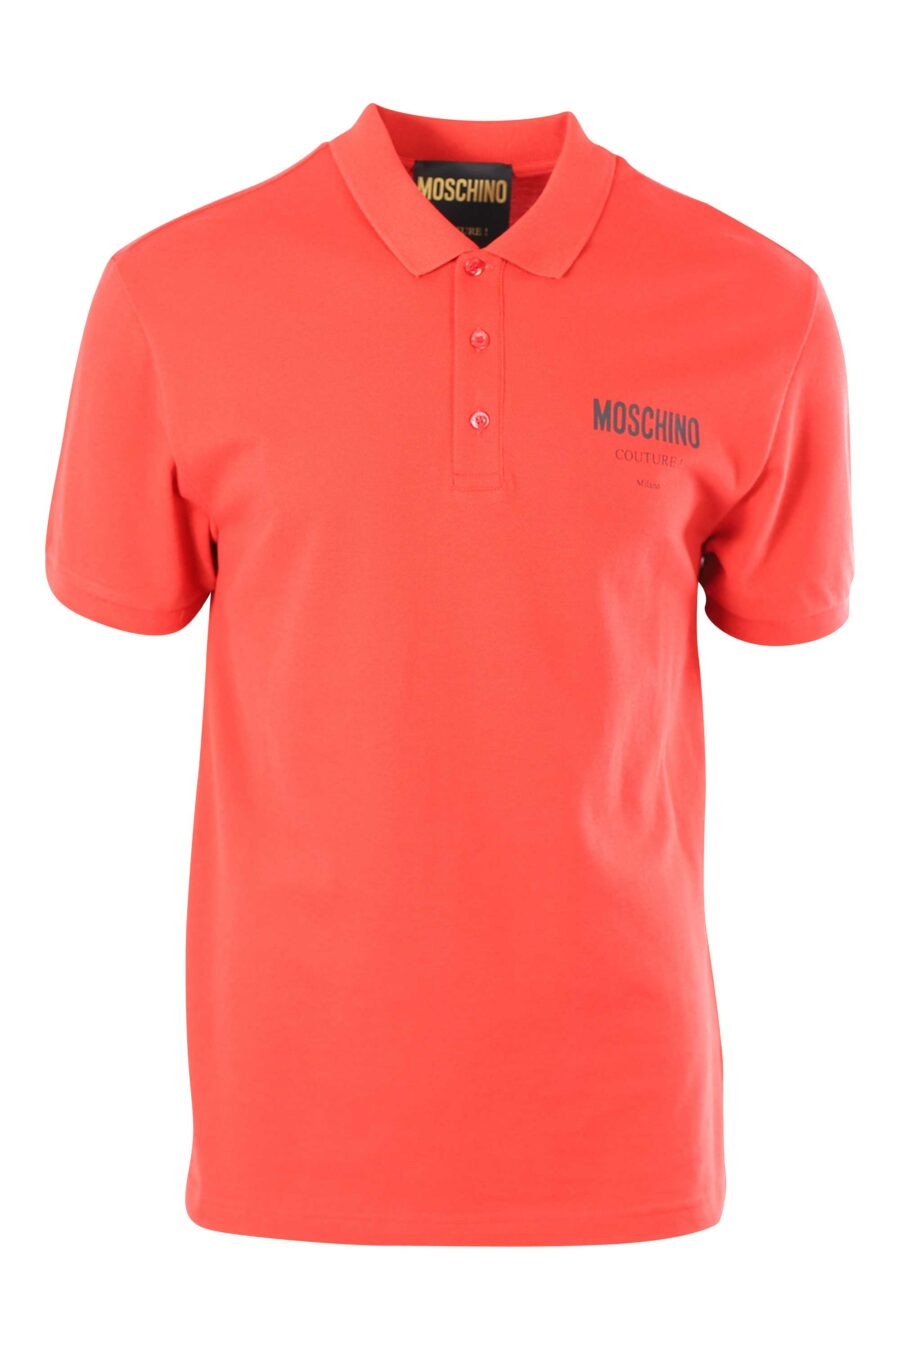 Rotes Poloshirt mit Mini-Logo "milano" - 889316176728